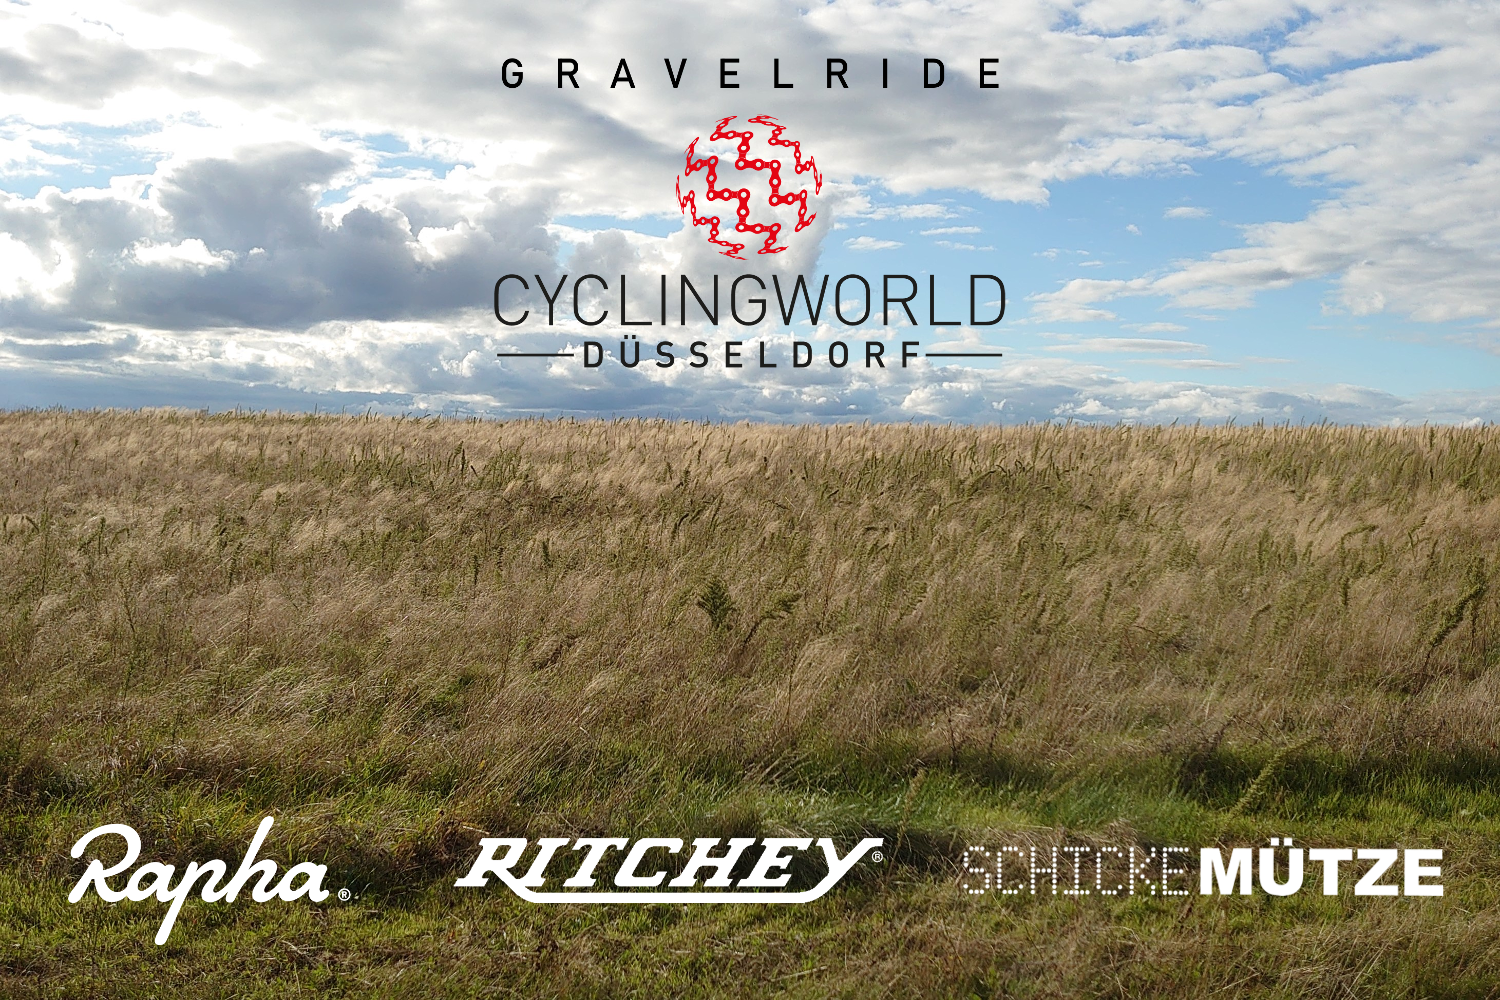 Louez un vélo de route pour Rapha X Ritchey X Schicke Mütze Gravel Ride
